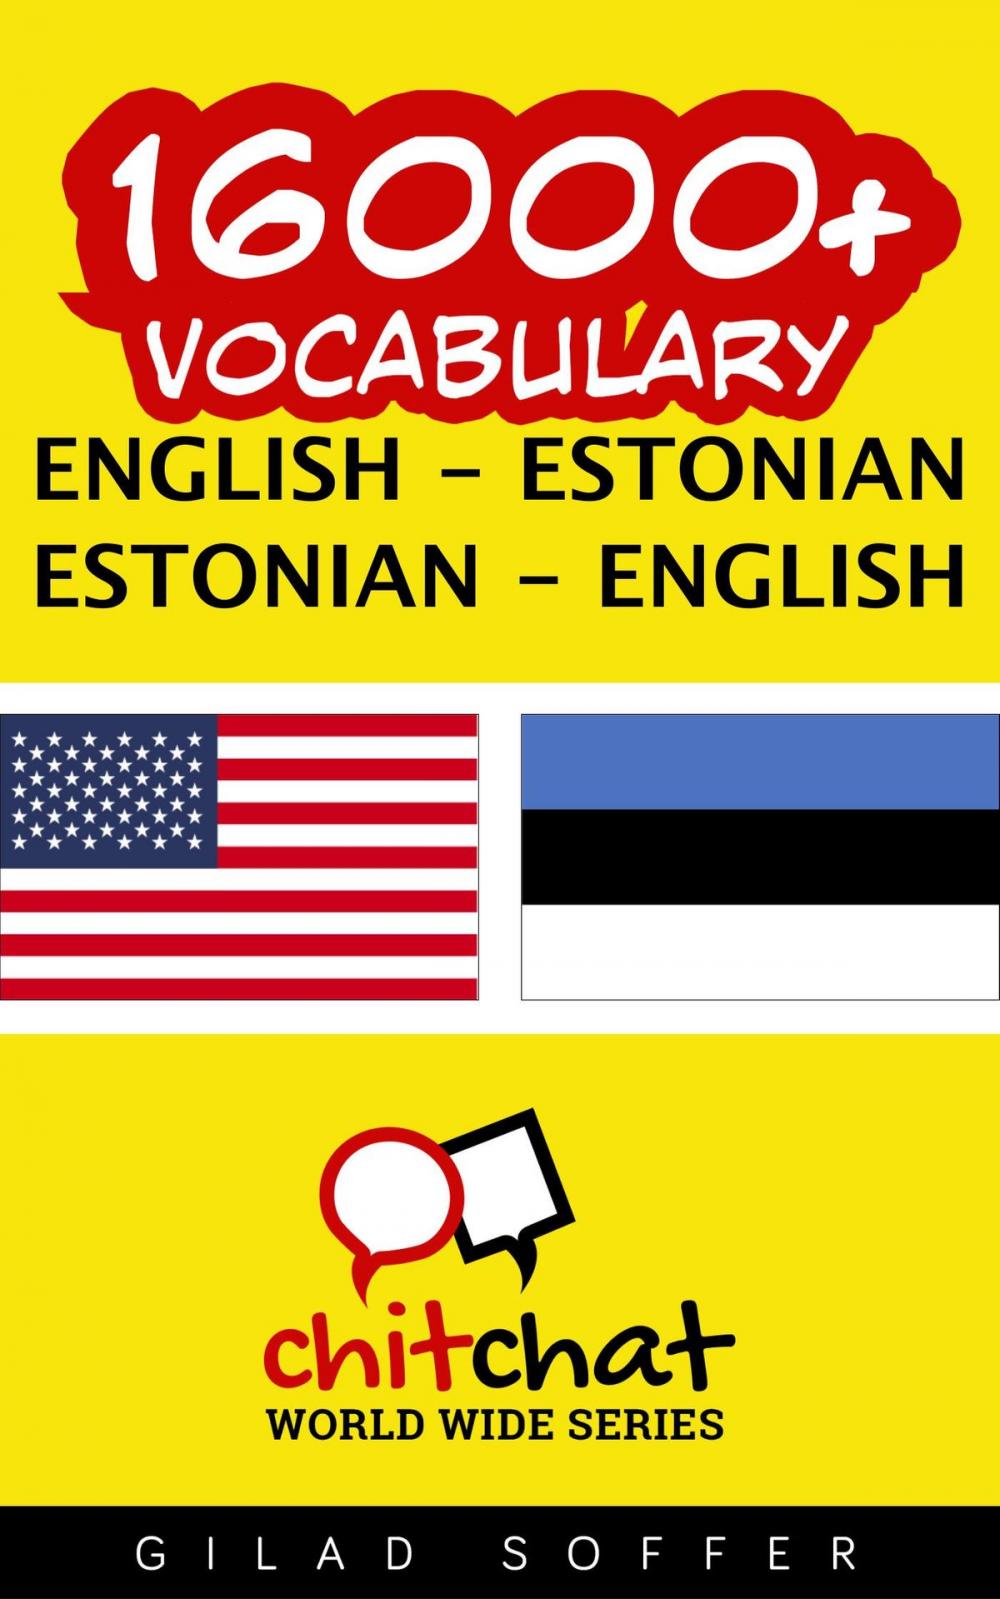 Big bigCover of 16000+ Vocabulary English - Estonian